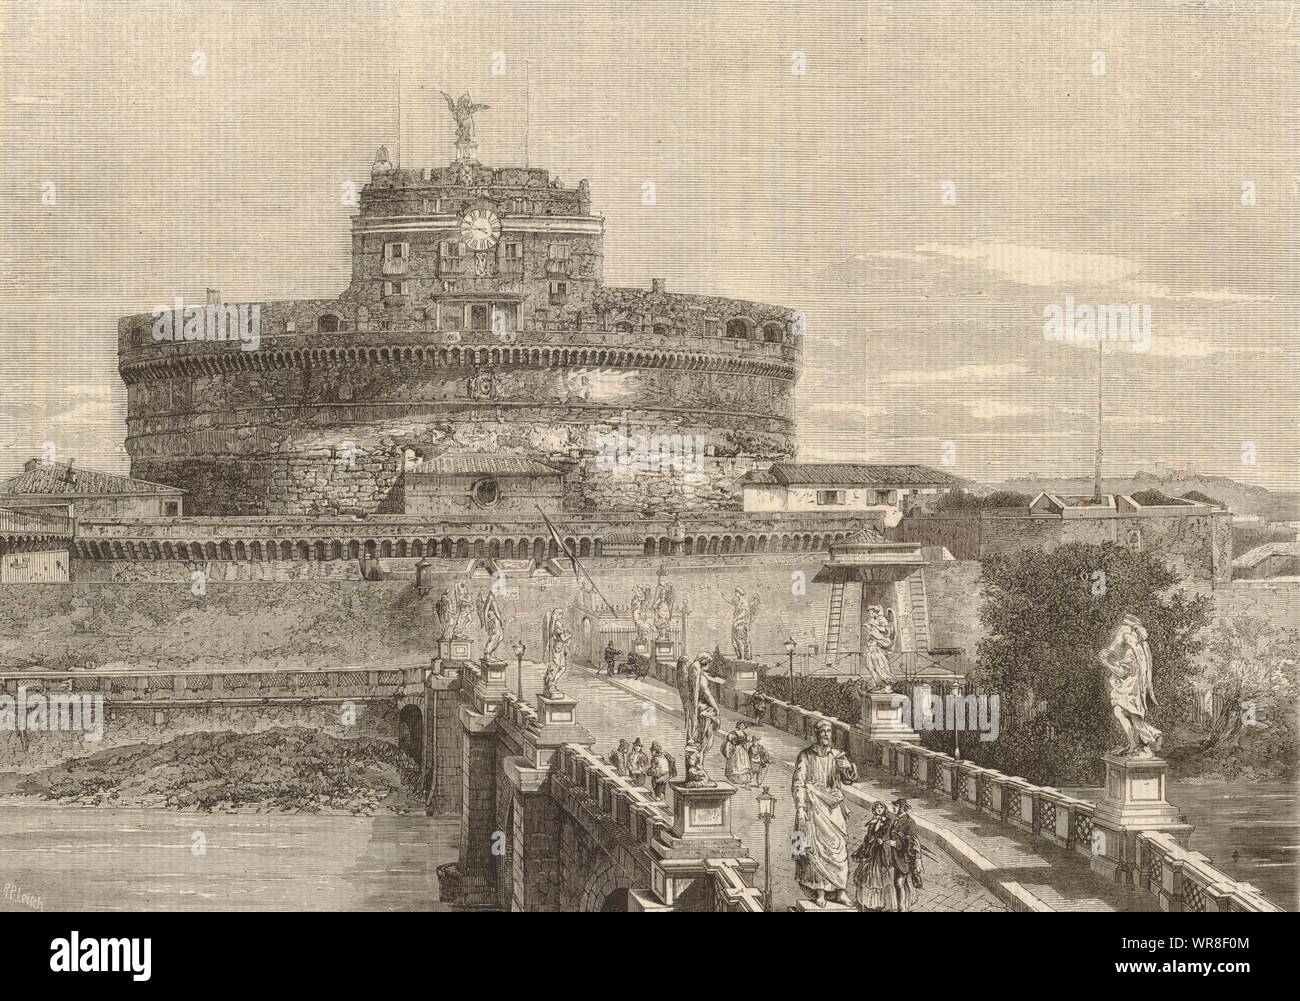 Das Schloss und die Brücke von St. Angelo in Rom. Castel Sant'Angelo 1859 ILN drucken Stockfoto